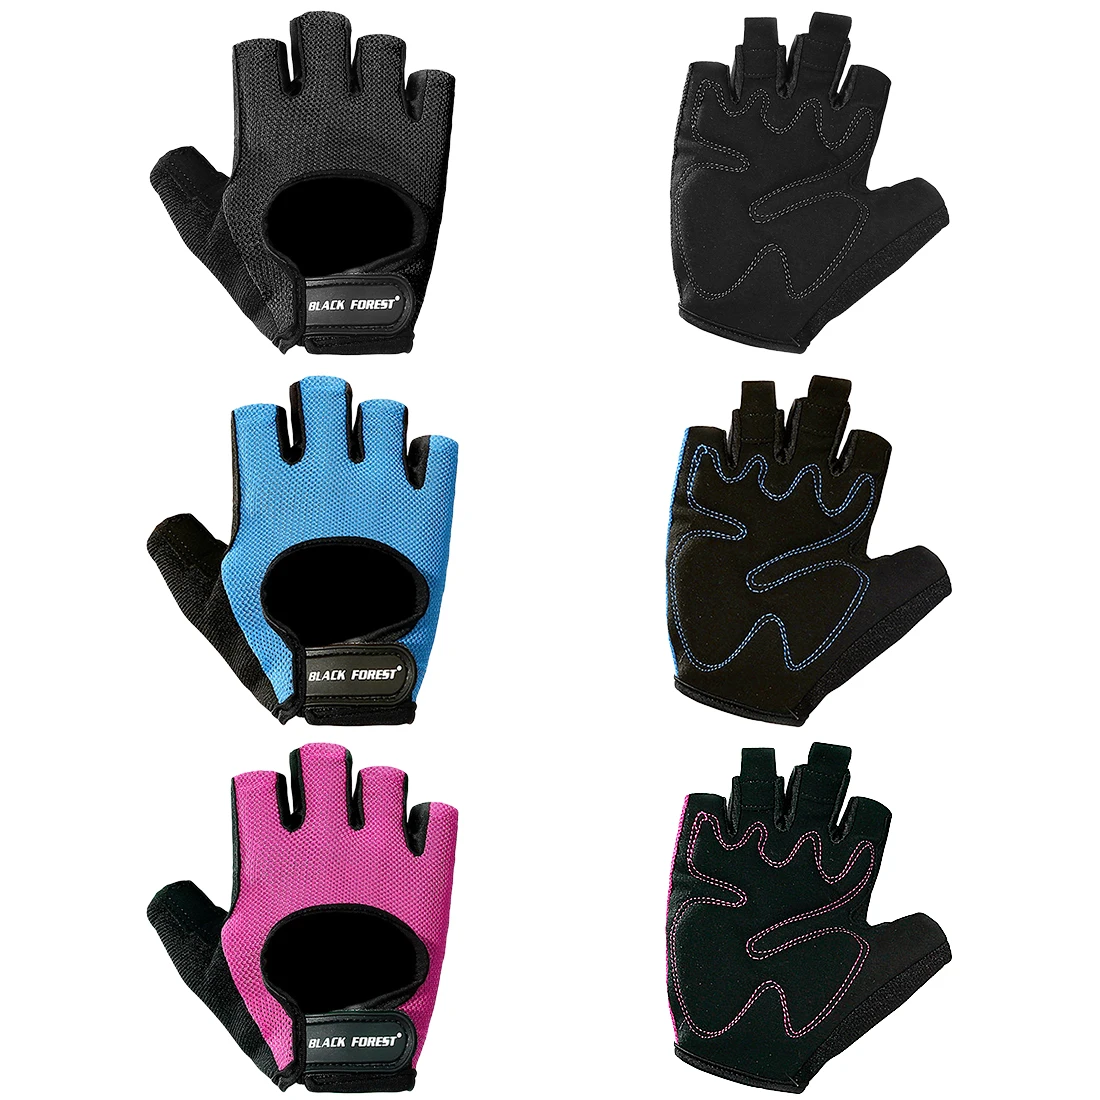 2018 s-xl перчатки для спортзала тяжелые спортивные перчатки для занятий тяжелой атлетикой для тренировки, бодибилдинга Спортивные Перчатки